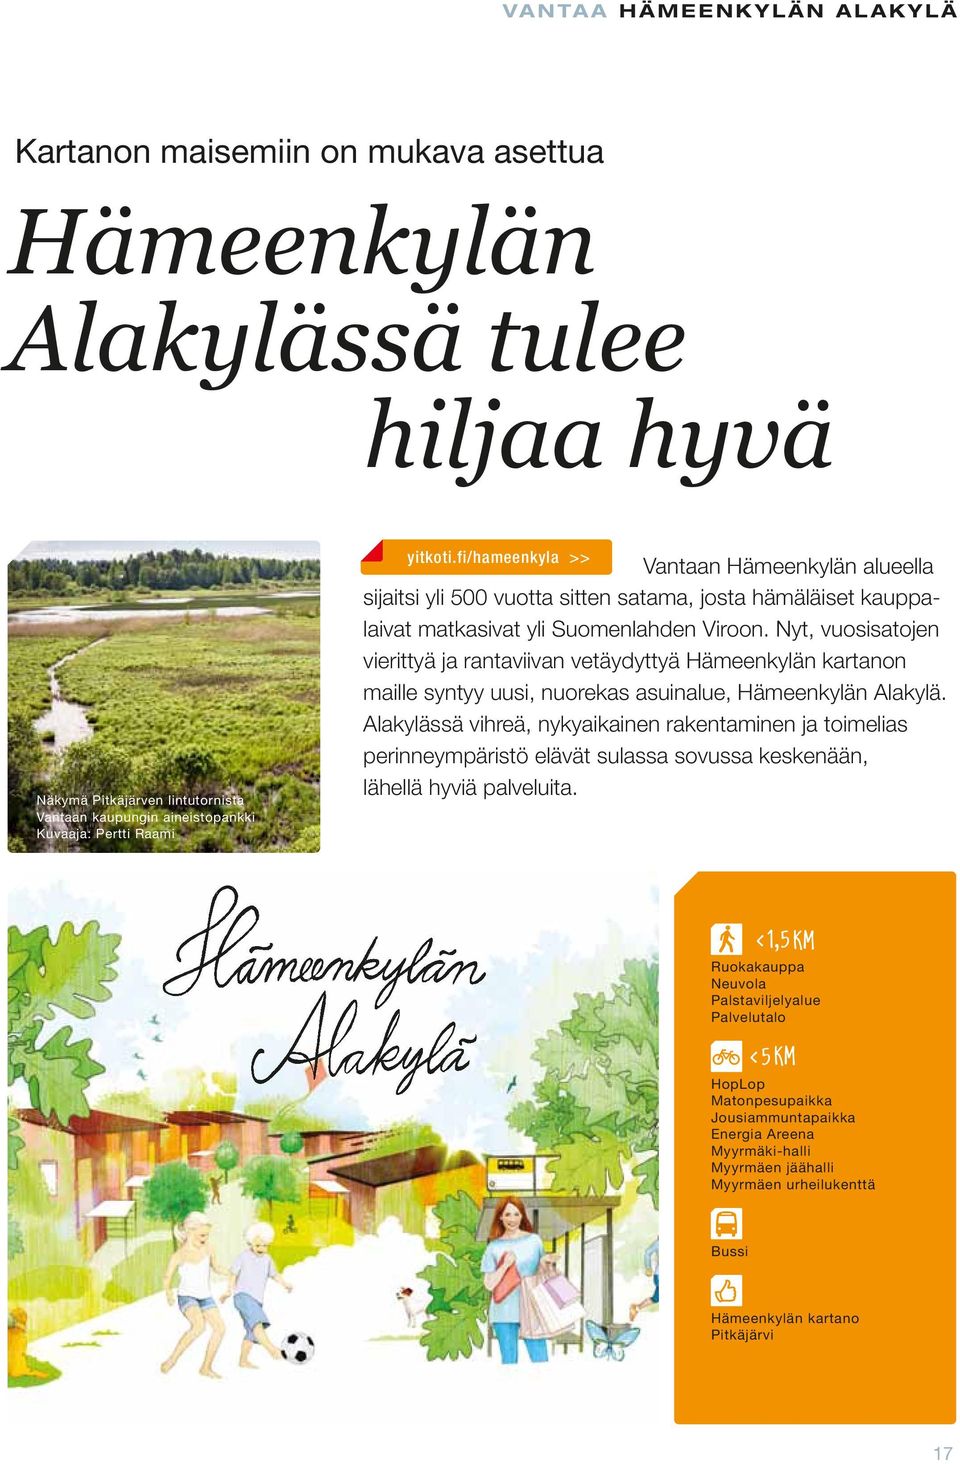 Nyt, vuosisatojen vierittyä ja rantaviivan vetäydyttyä Hämeenkylän kartanon maille syntyy uusi, nuorekas asuinalue, Hämeenkylän Alakylä.